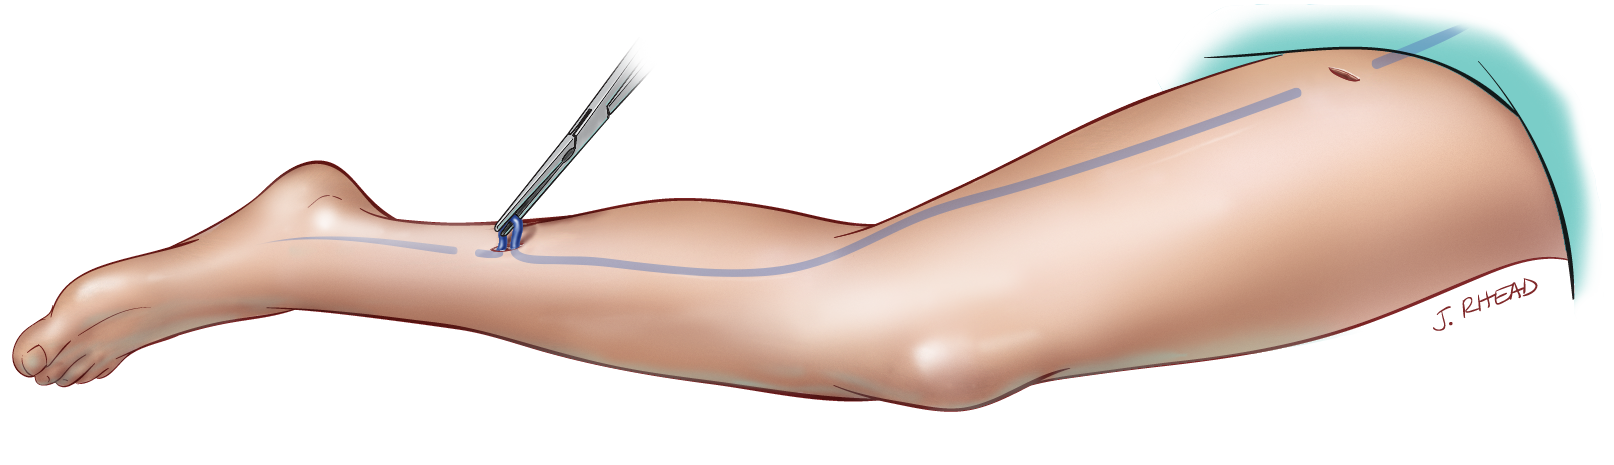 Varicose veins surgery